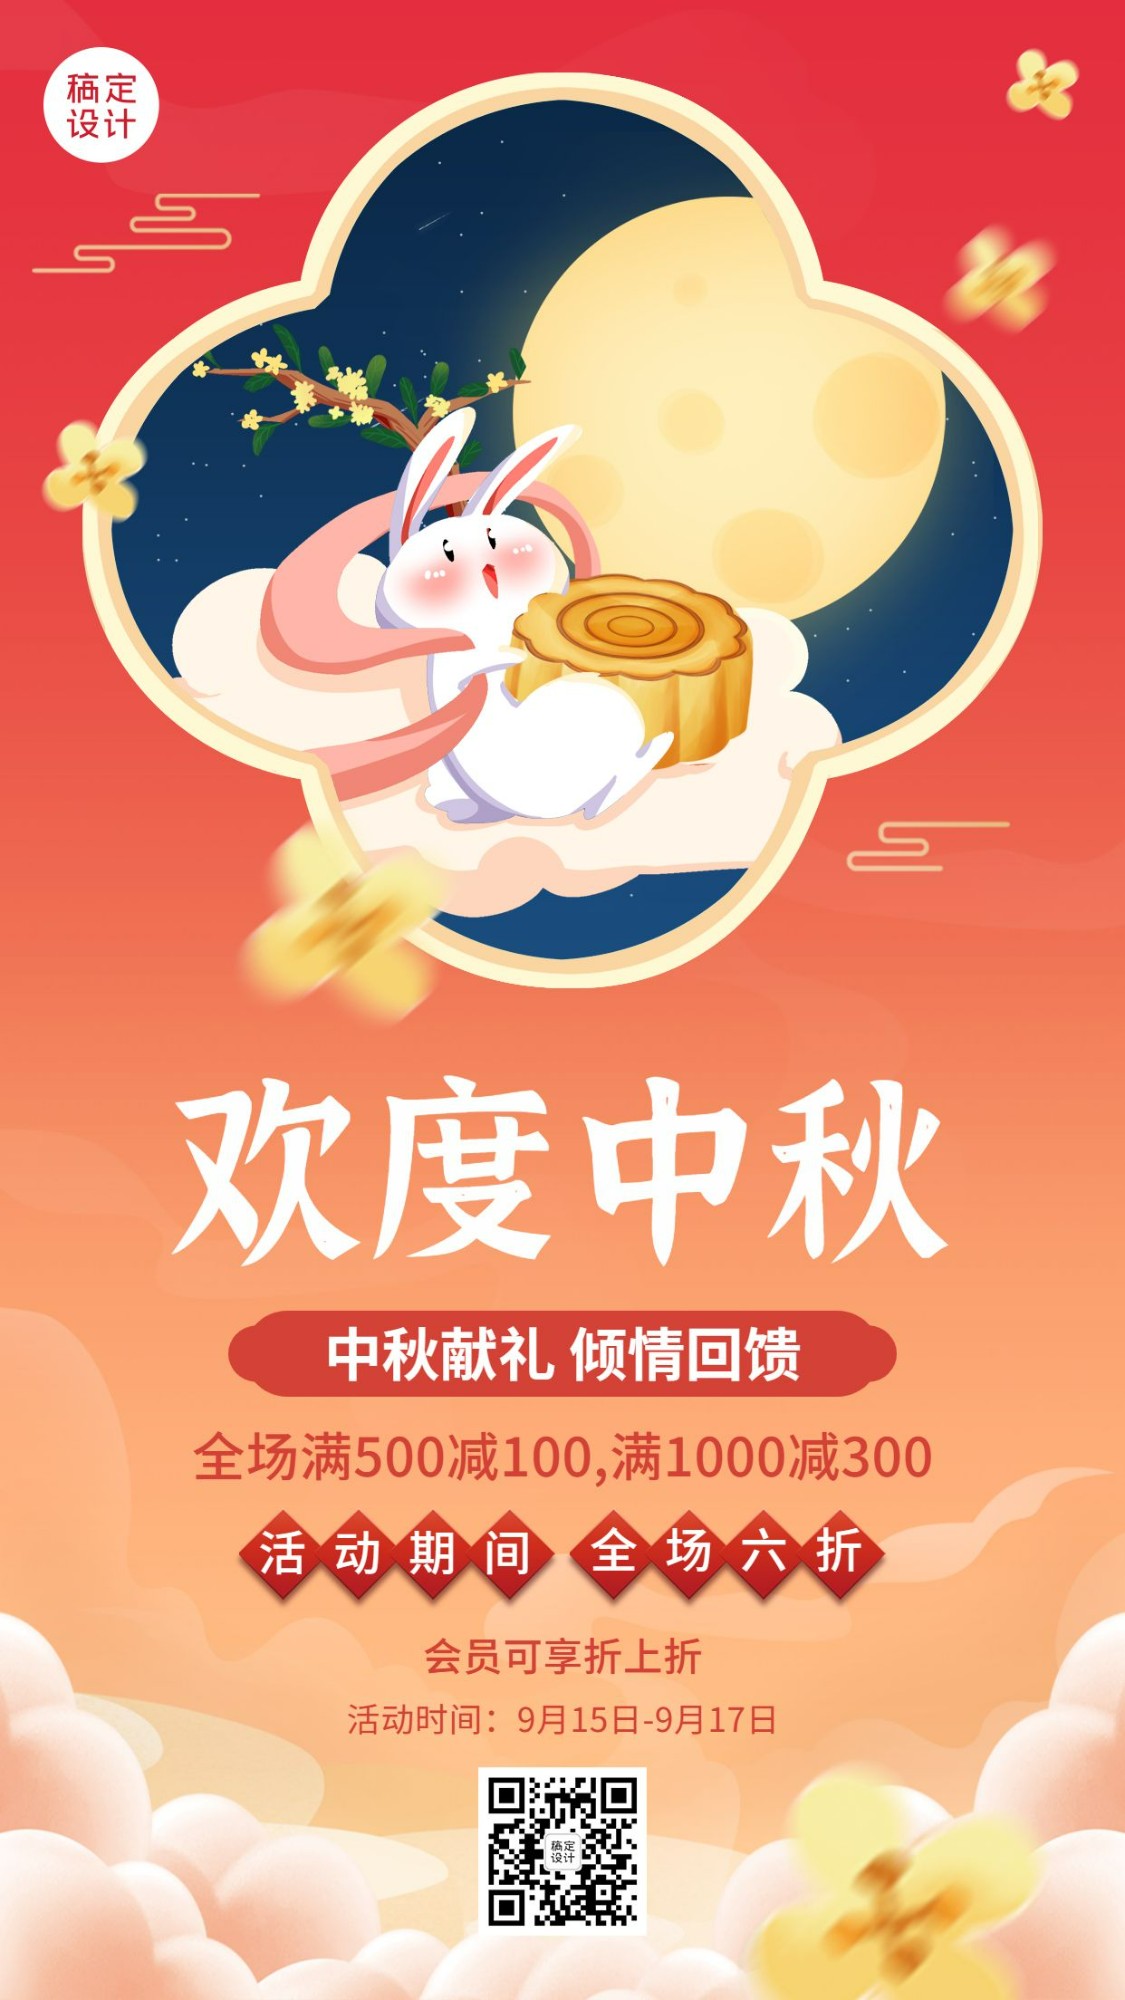 中秋节活动促销营销手绘手机海报预览效果